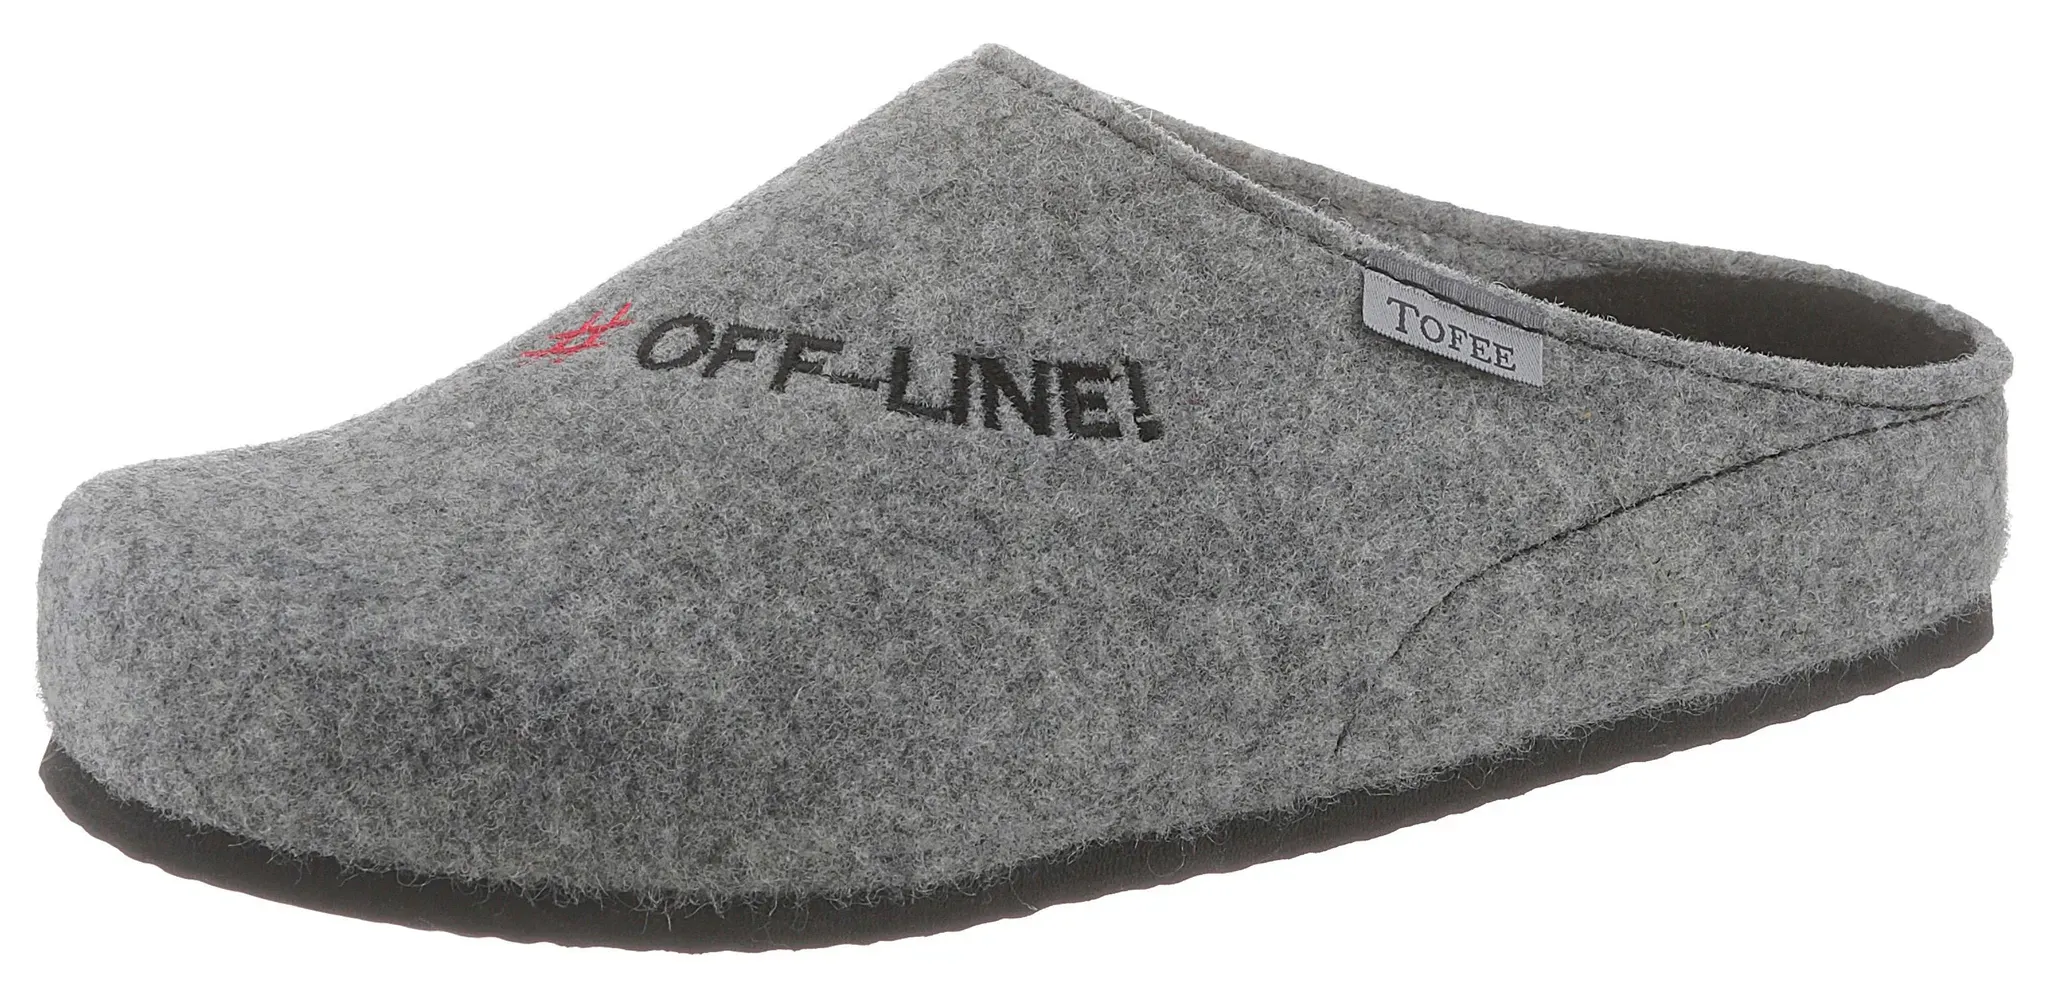 Pantoffel TOFEE Gr. 43, grau (grau, meliert) Herren Schuhe Hausschuhe mit Schriftzug "Off-Line"